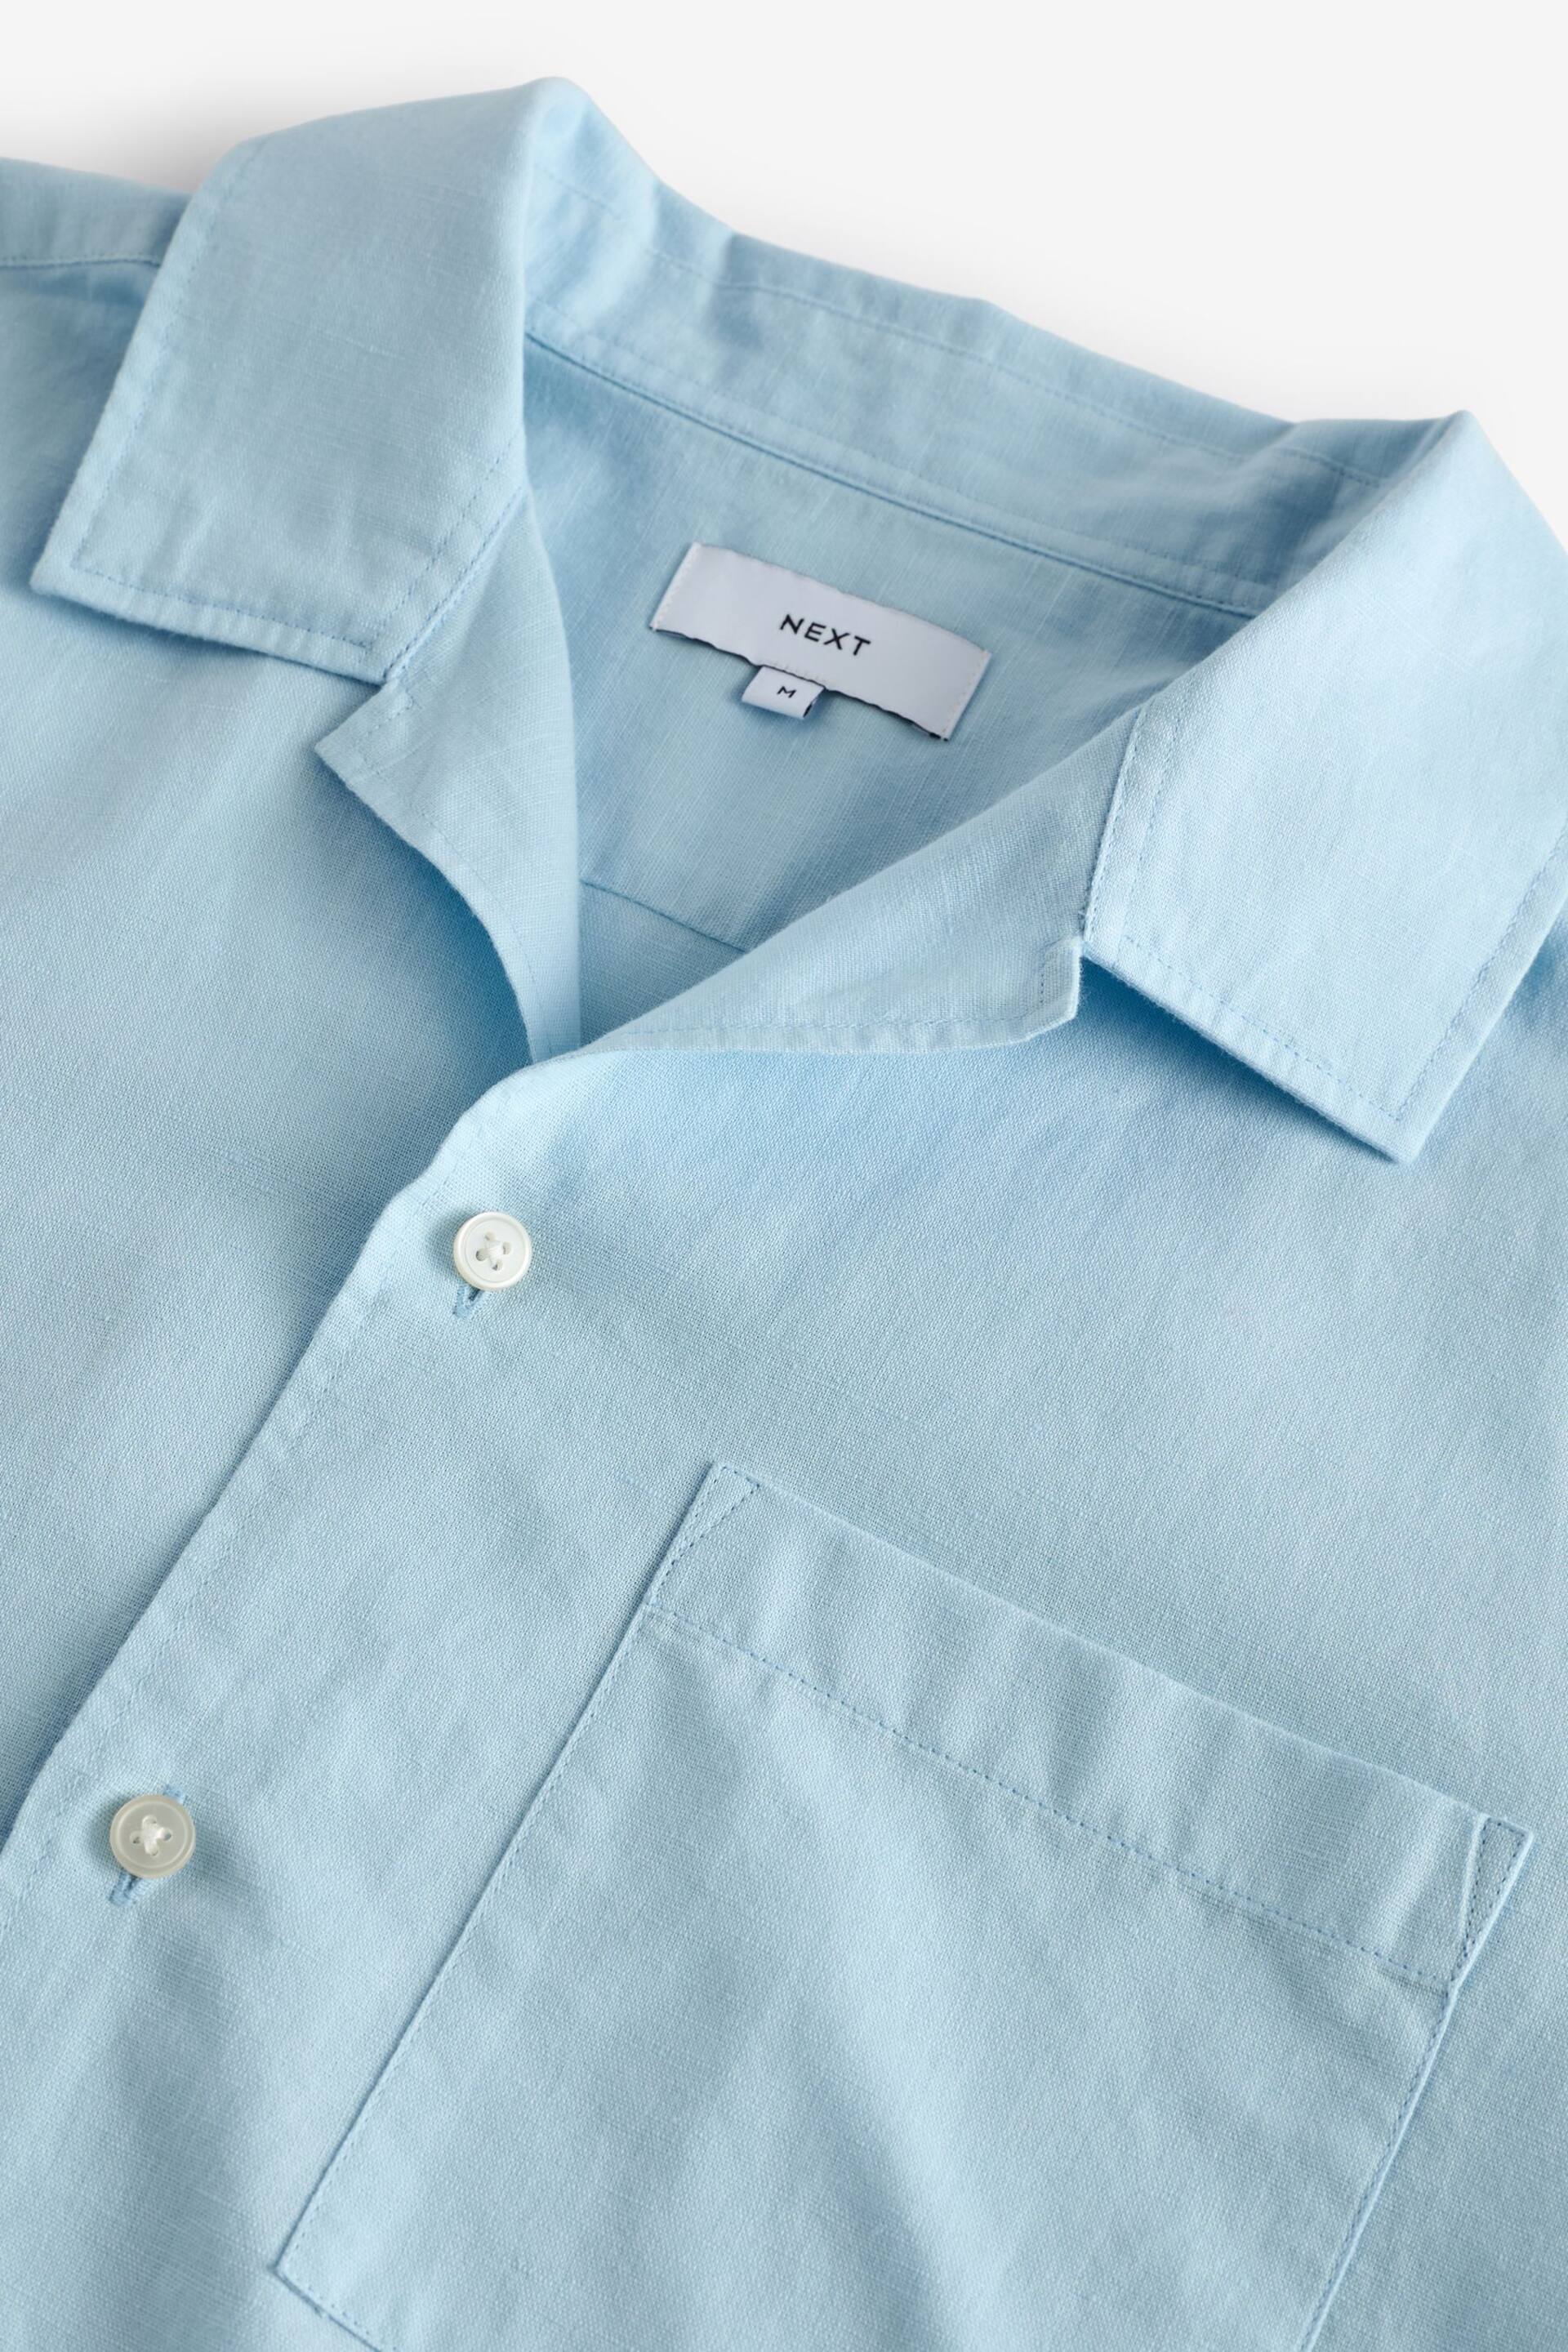 Blue Cuban Collar Linen Blend Short Sleeve Shirt - Image 6 of 7